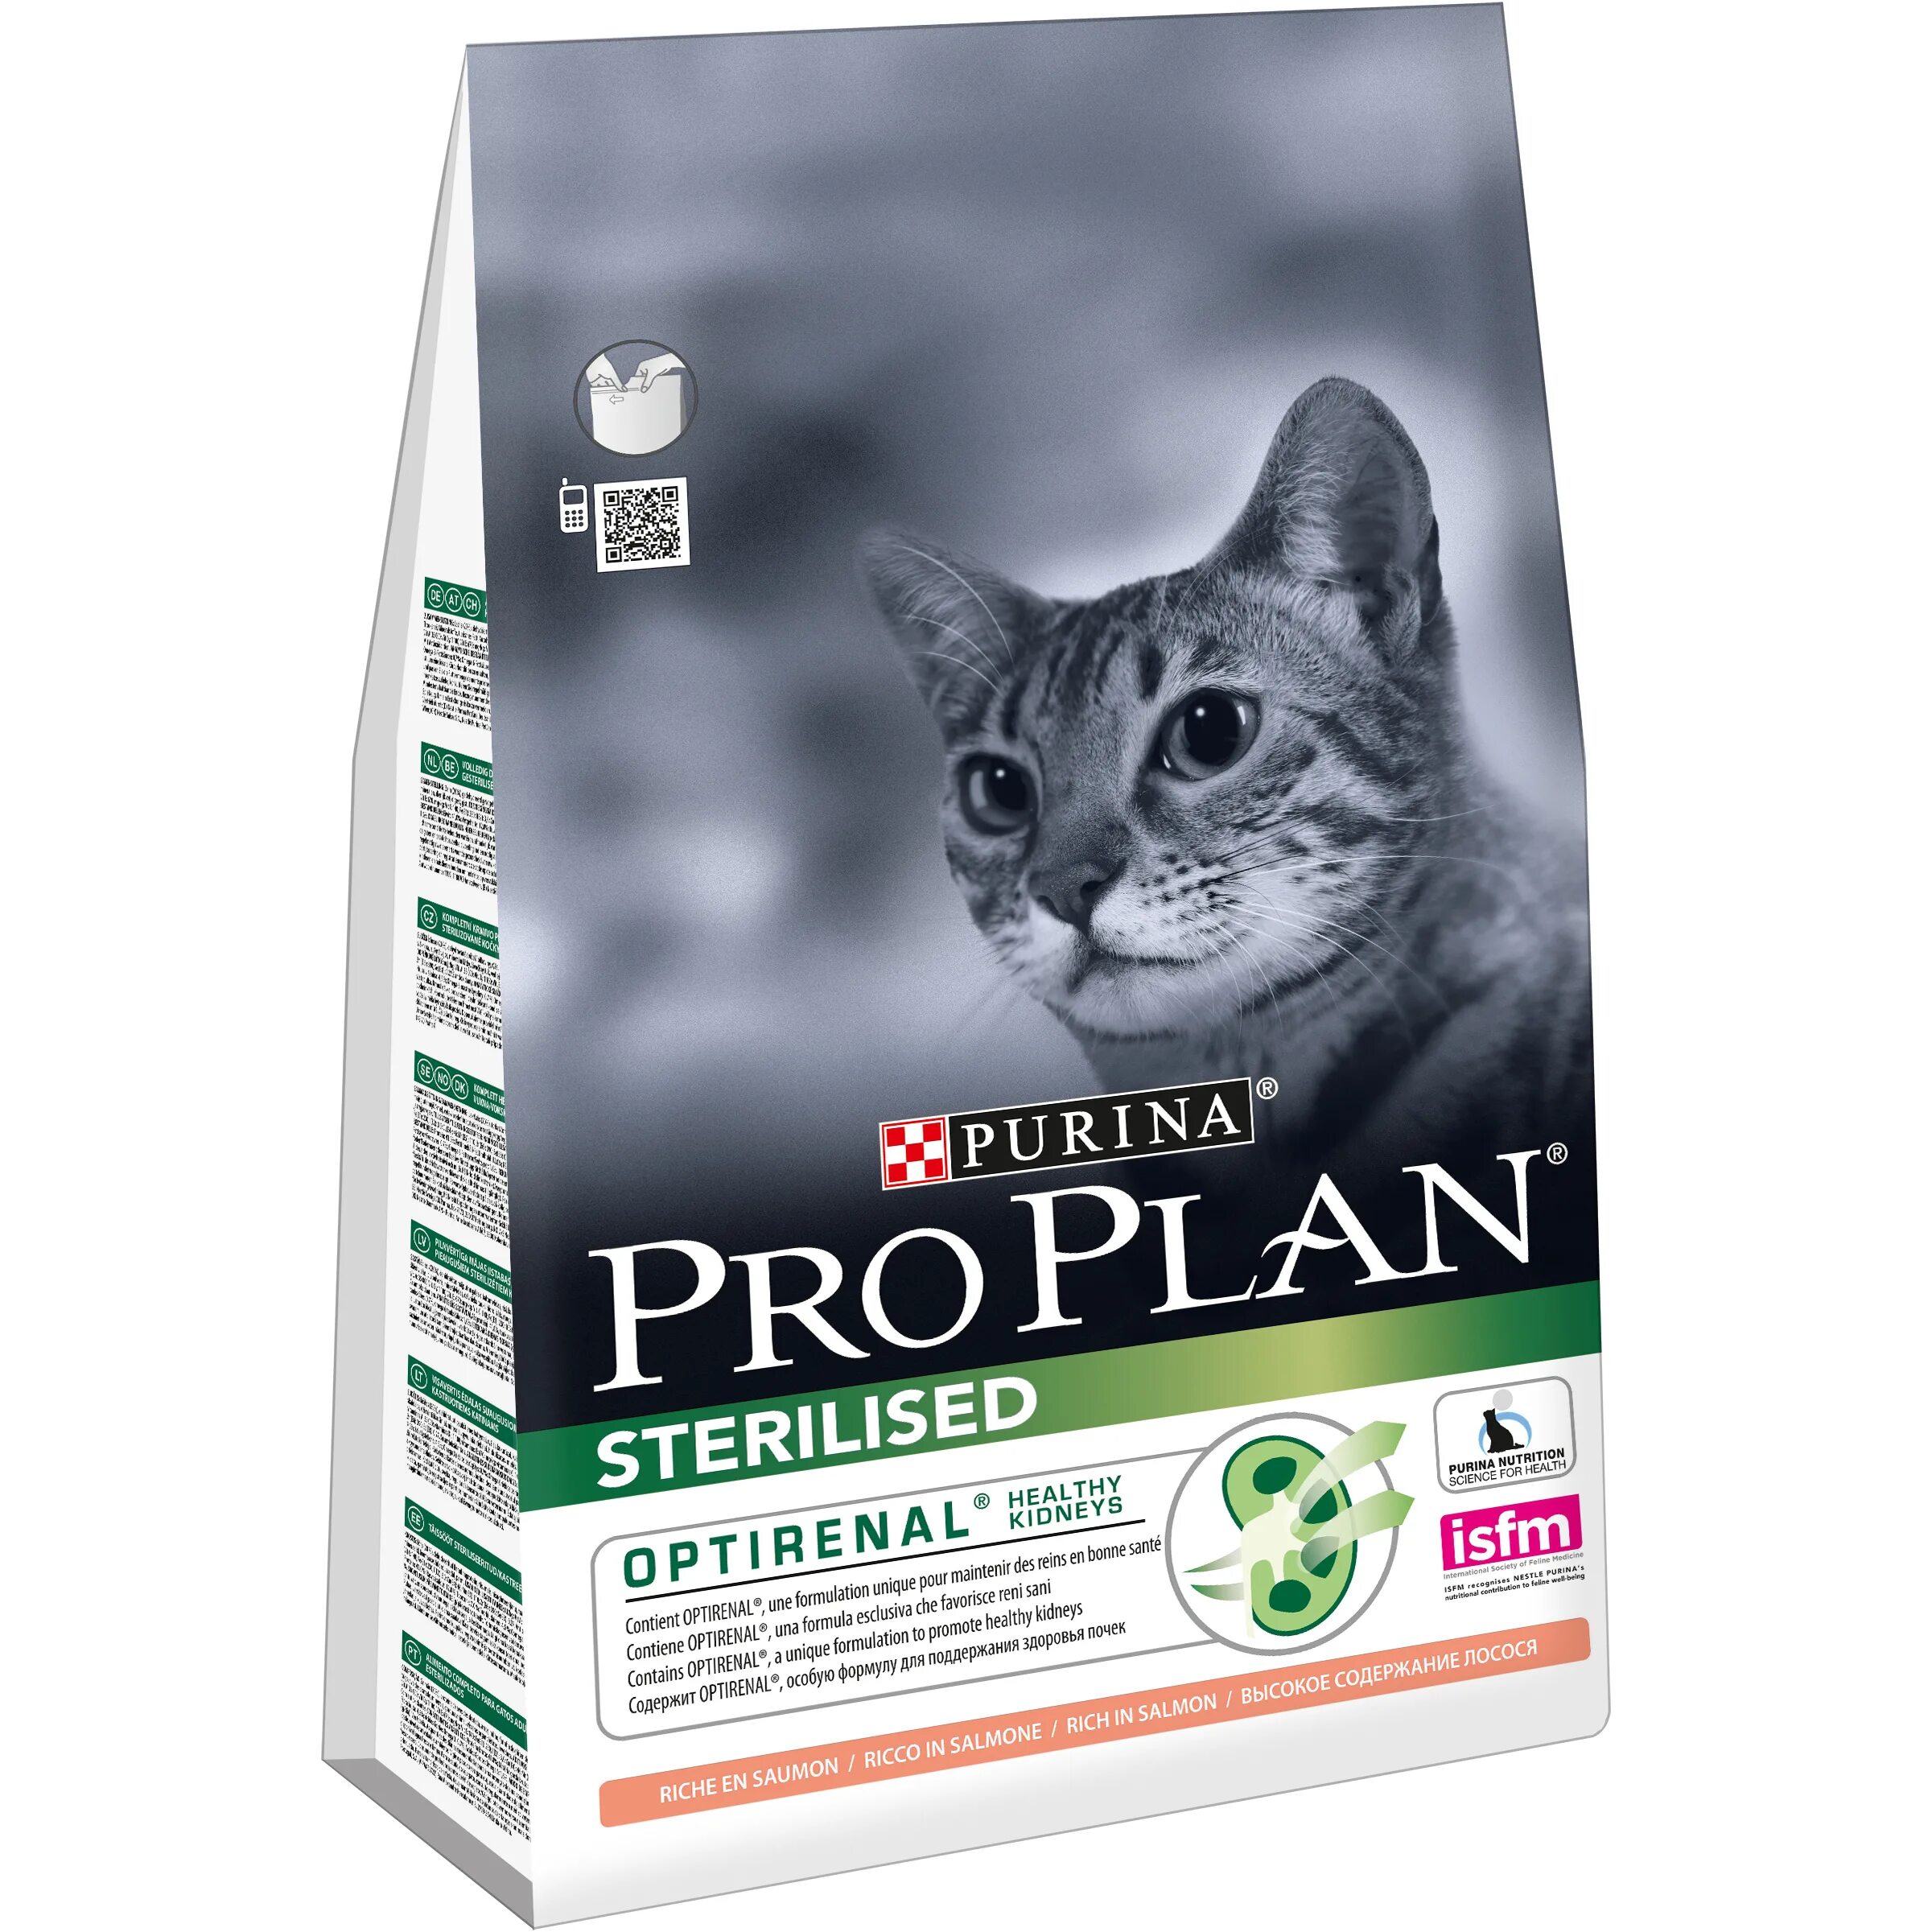 Purina Pro Plan delicate для кошек. Purina Pro Plan Sterilised 7+. Pro Plan Sterilised для кошек. Пурина Проплан для стерилизованных кошек сухой.